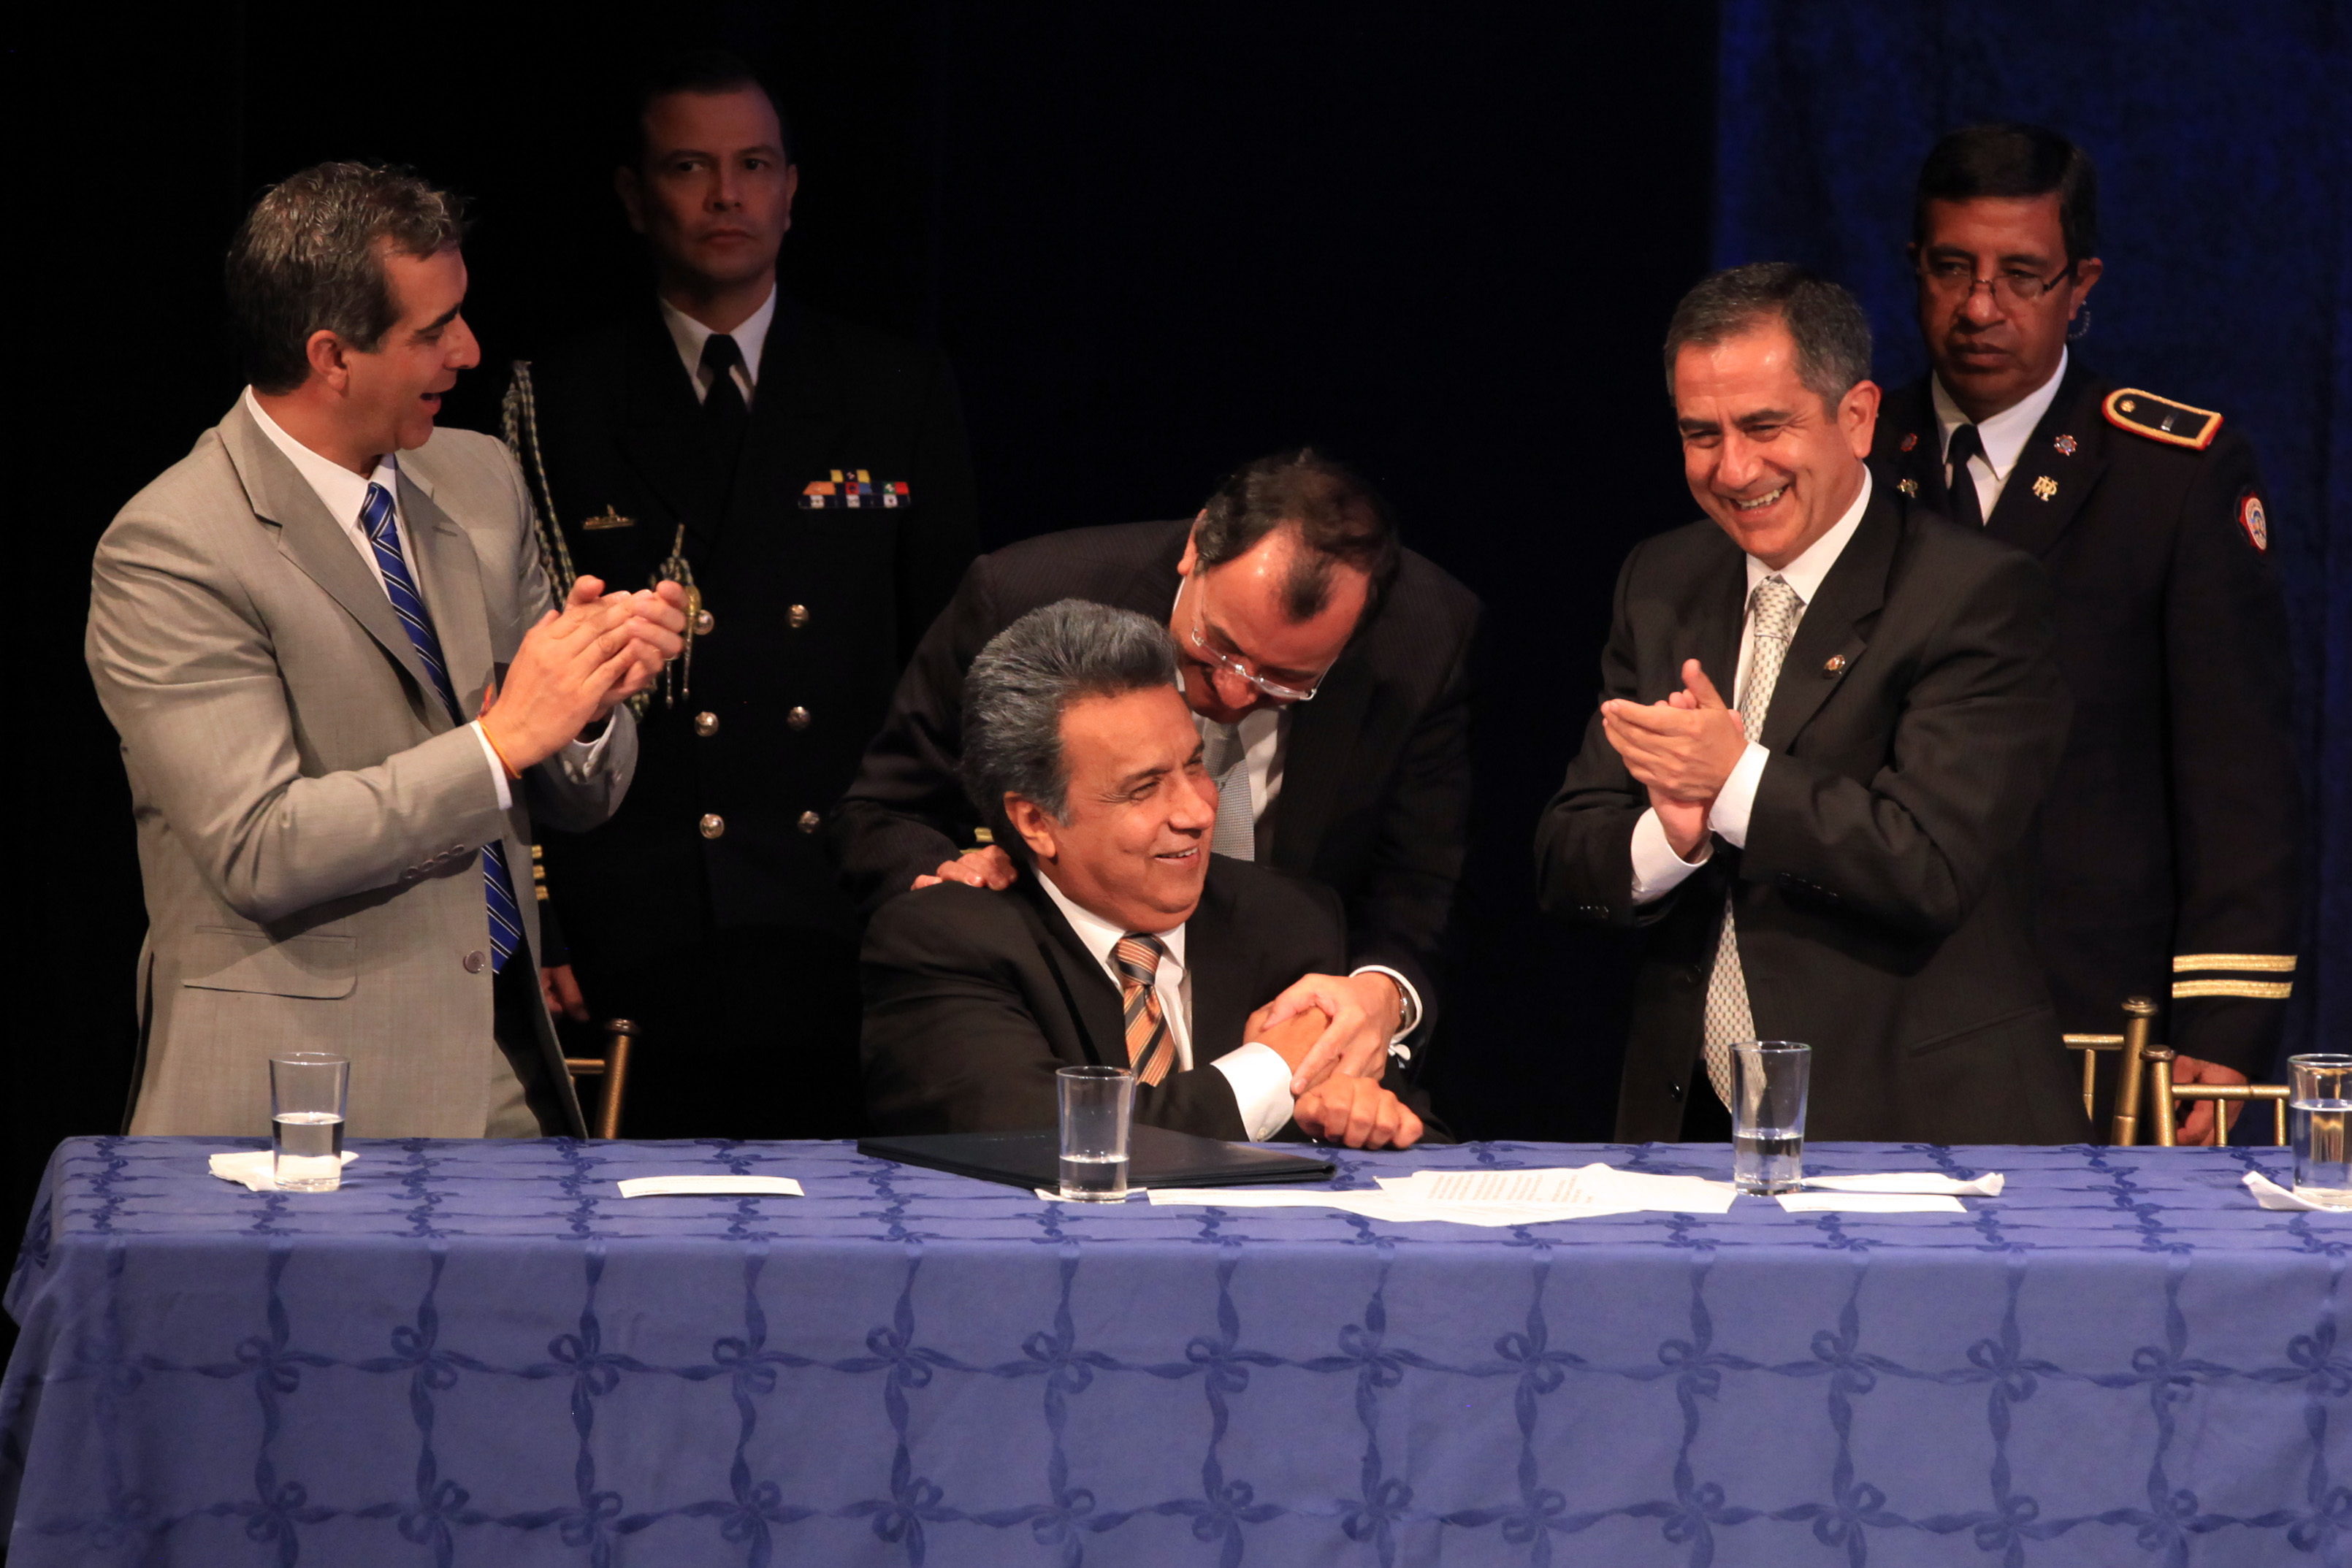  لينين مورينو يتصدر الجولة الاولى من الانتخابات الرئاسية في الاكوادور